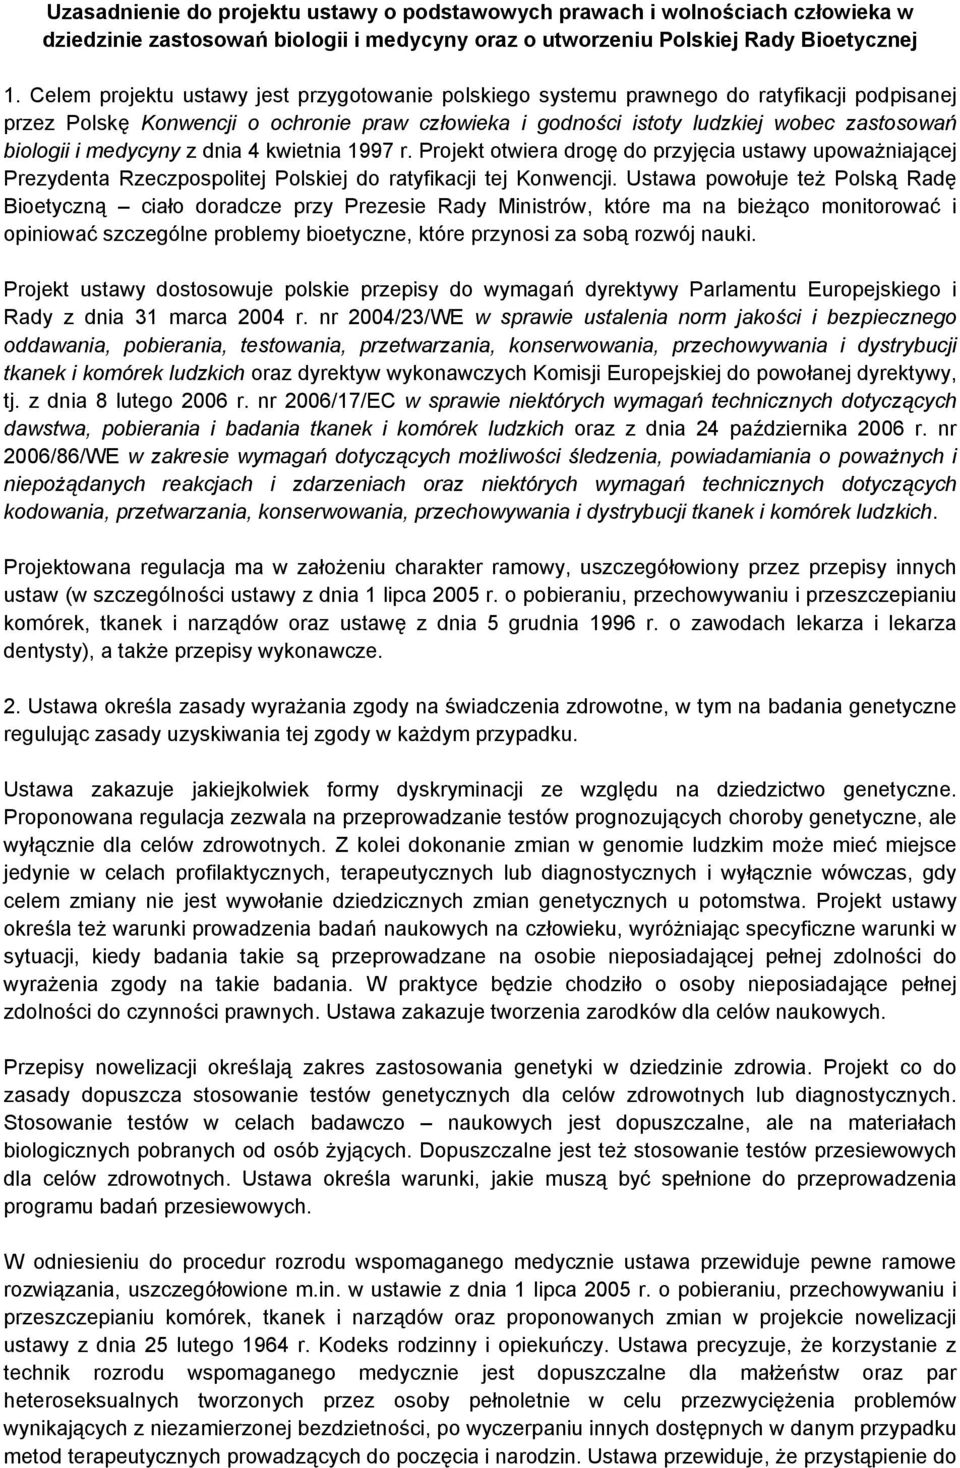 medycyny z dnia 4 kwietnia 1997 r. Projekt otwiera drogę do przyjęcia ustawy upoważniającej Prezydenta Rzeczpospolitej Polskiej do ratyfikacji tej Konwencji.